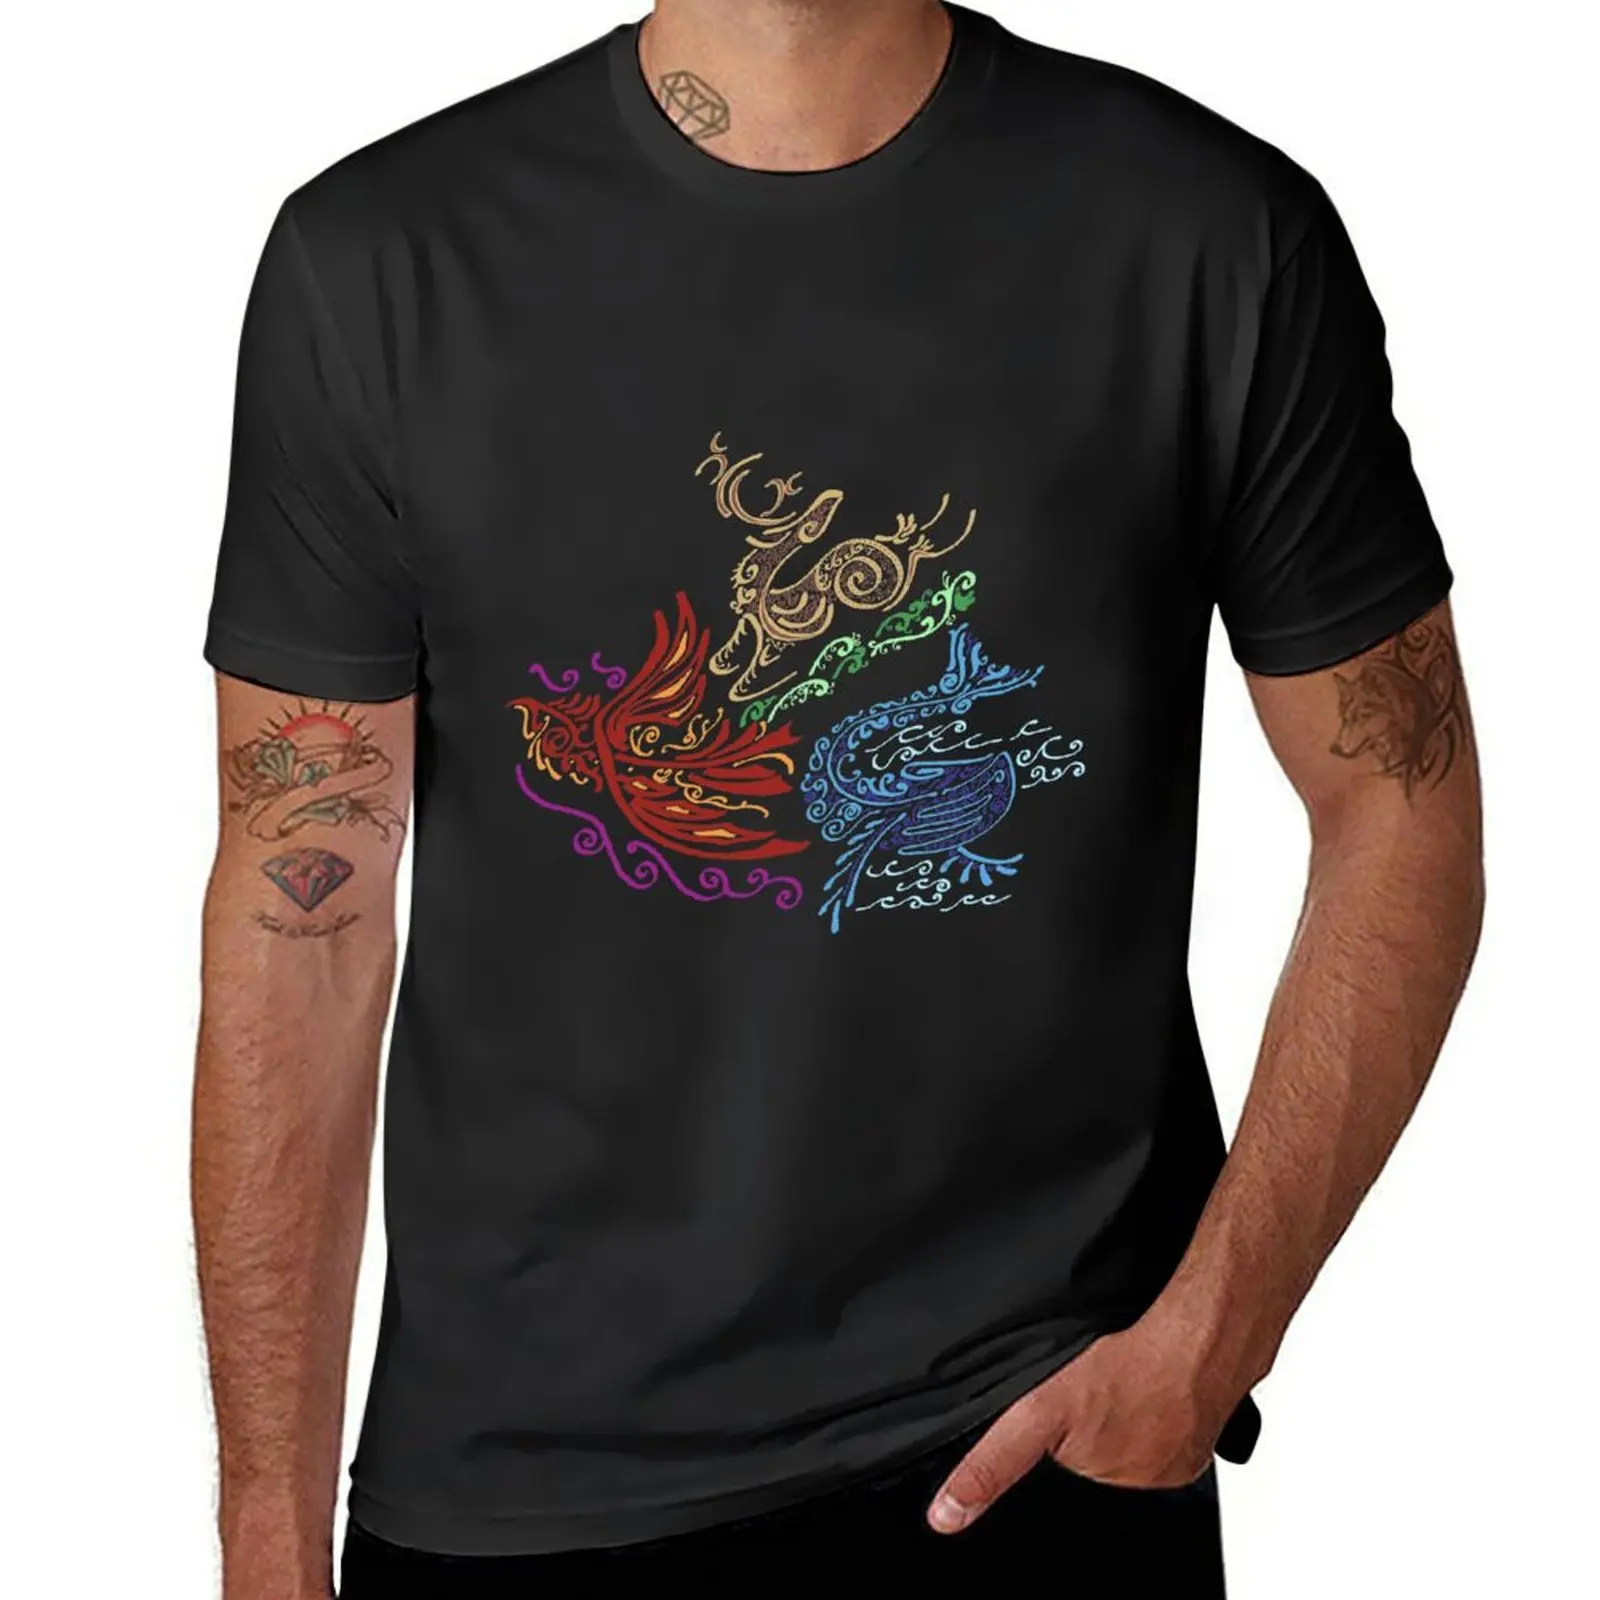 

Новая футболка Land Sea Air, эстетическая одежда, футболка с графическим рисунком, футболки, футболки, мужские футболки с графическим рисунком, аниме